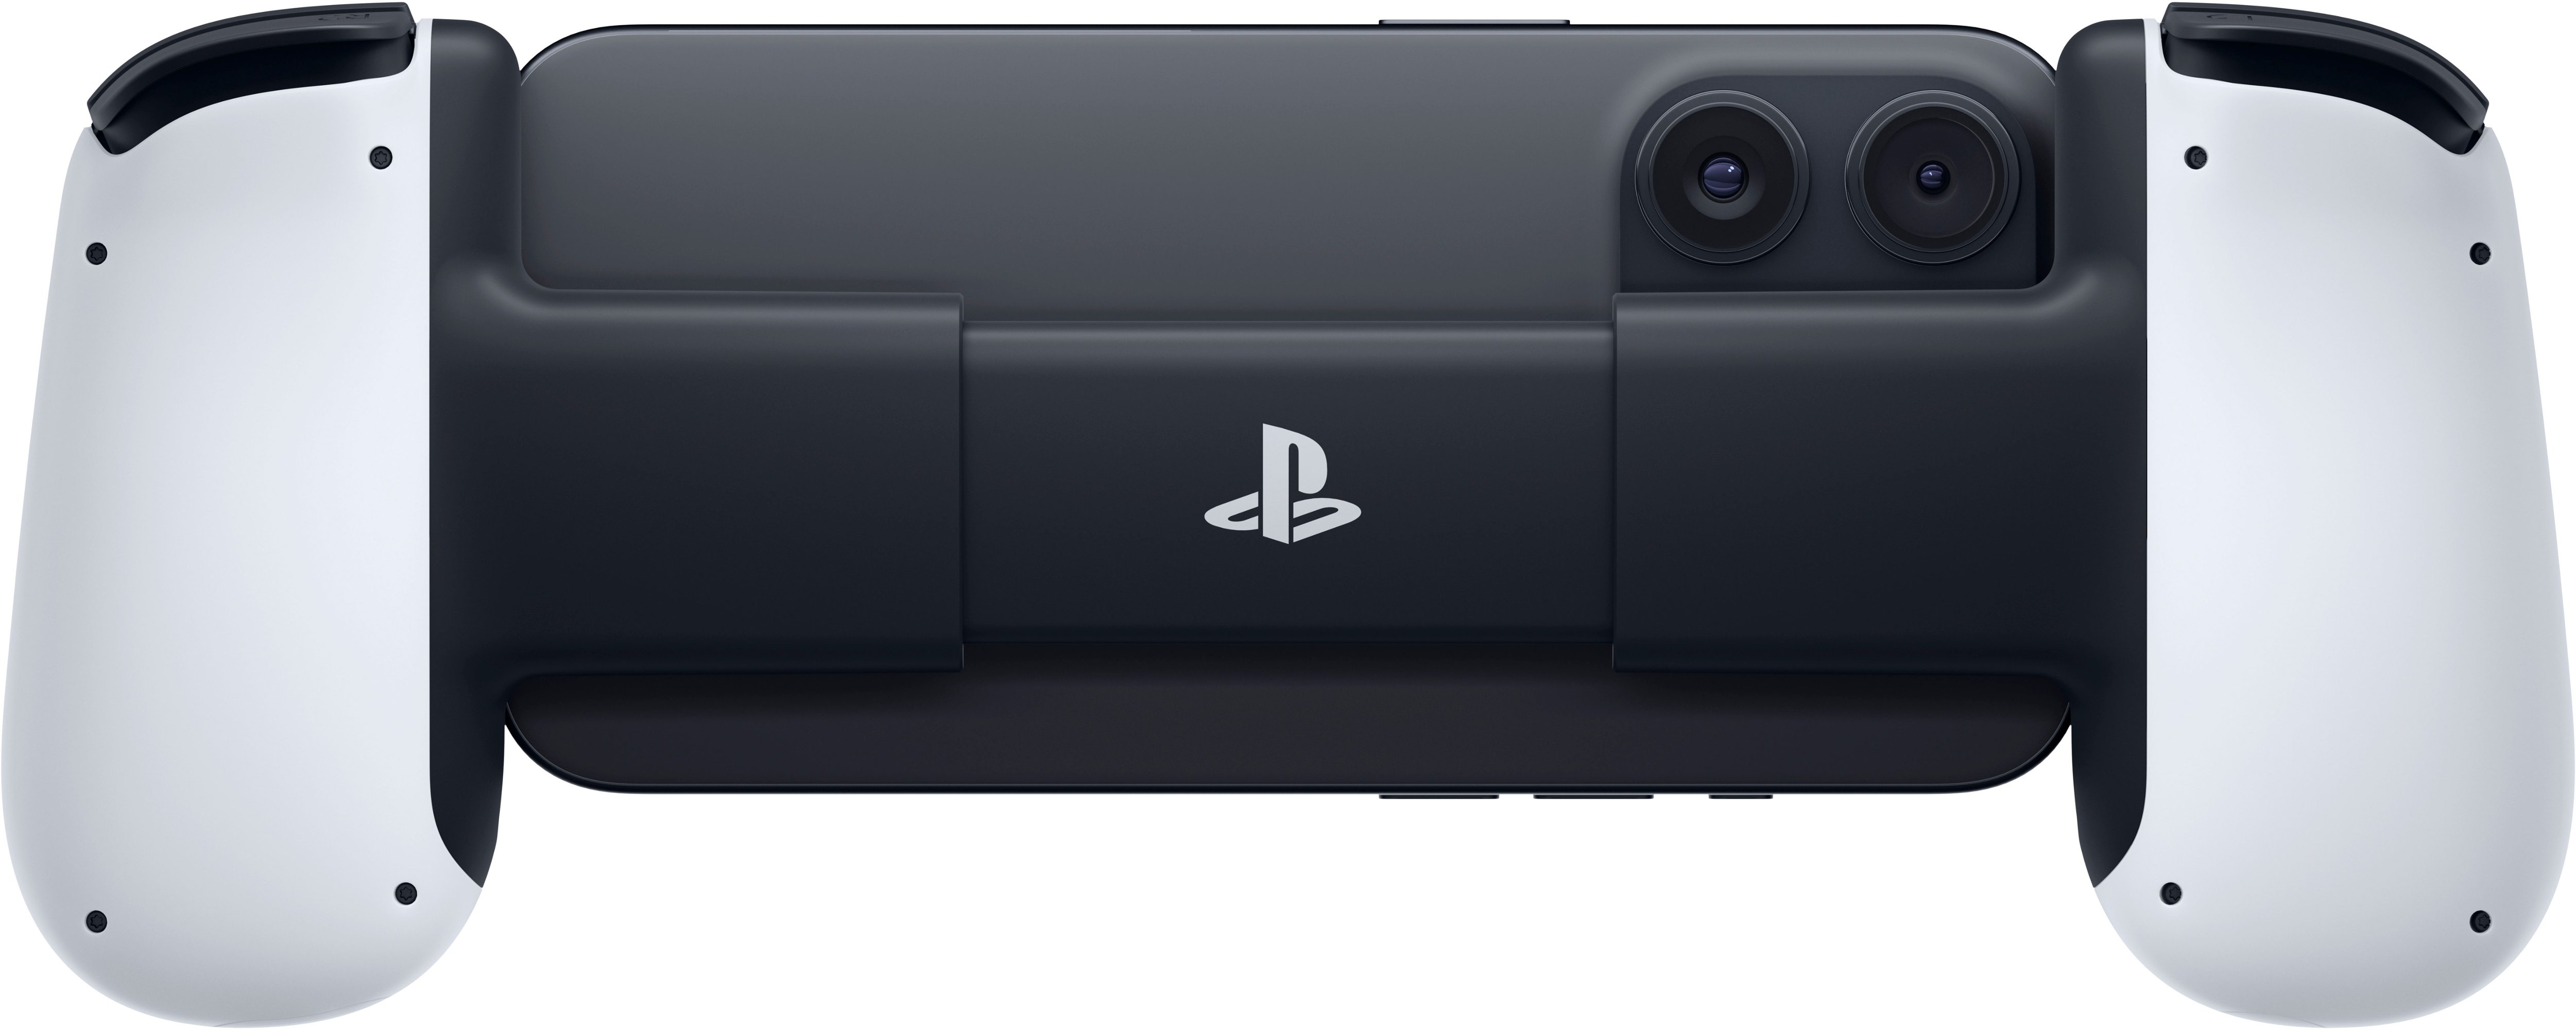 CYGNI PlayStation 5 - Best Buy